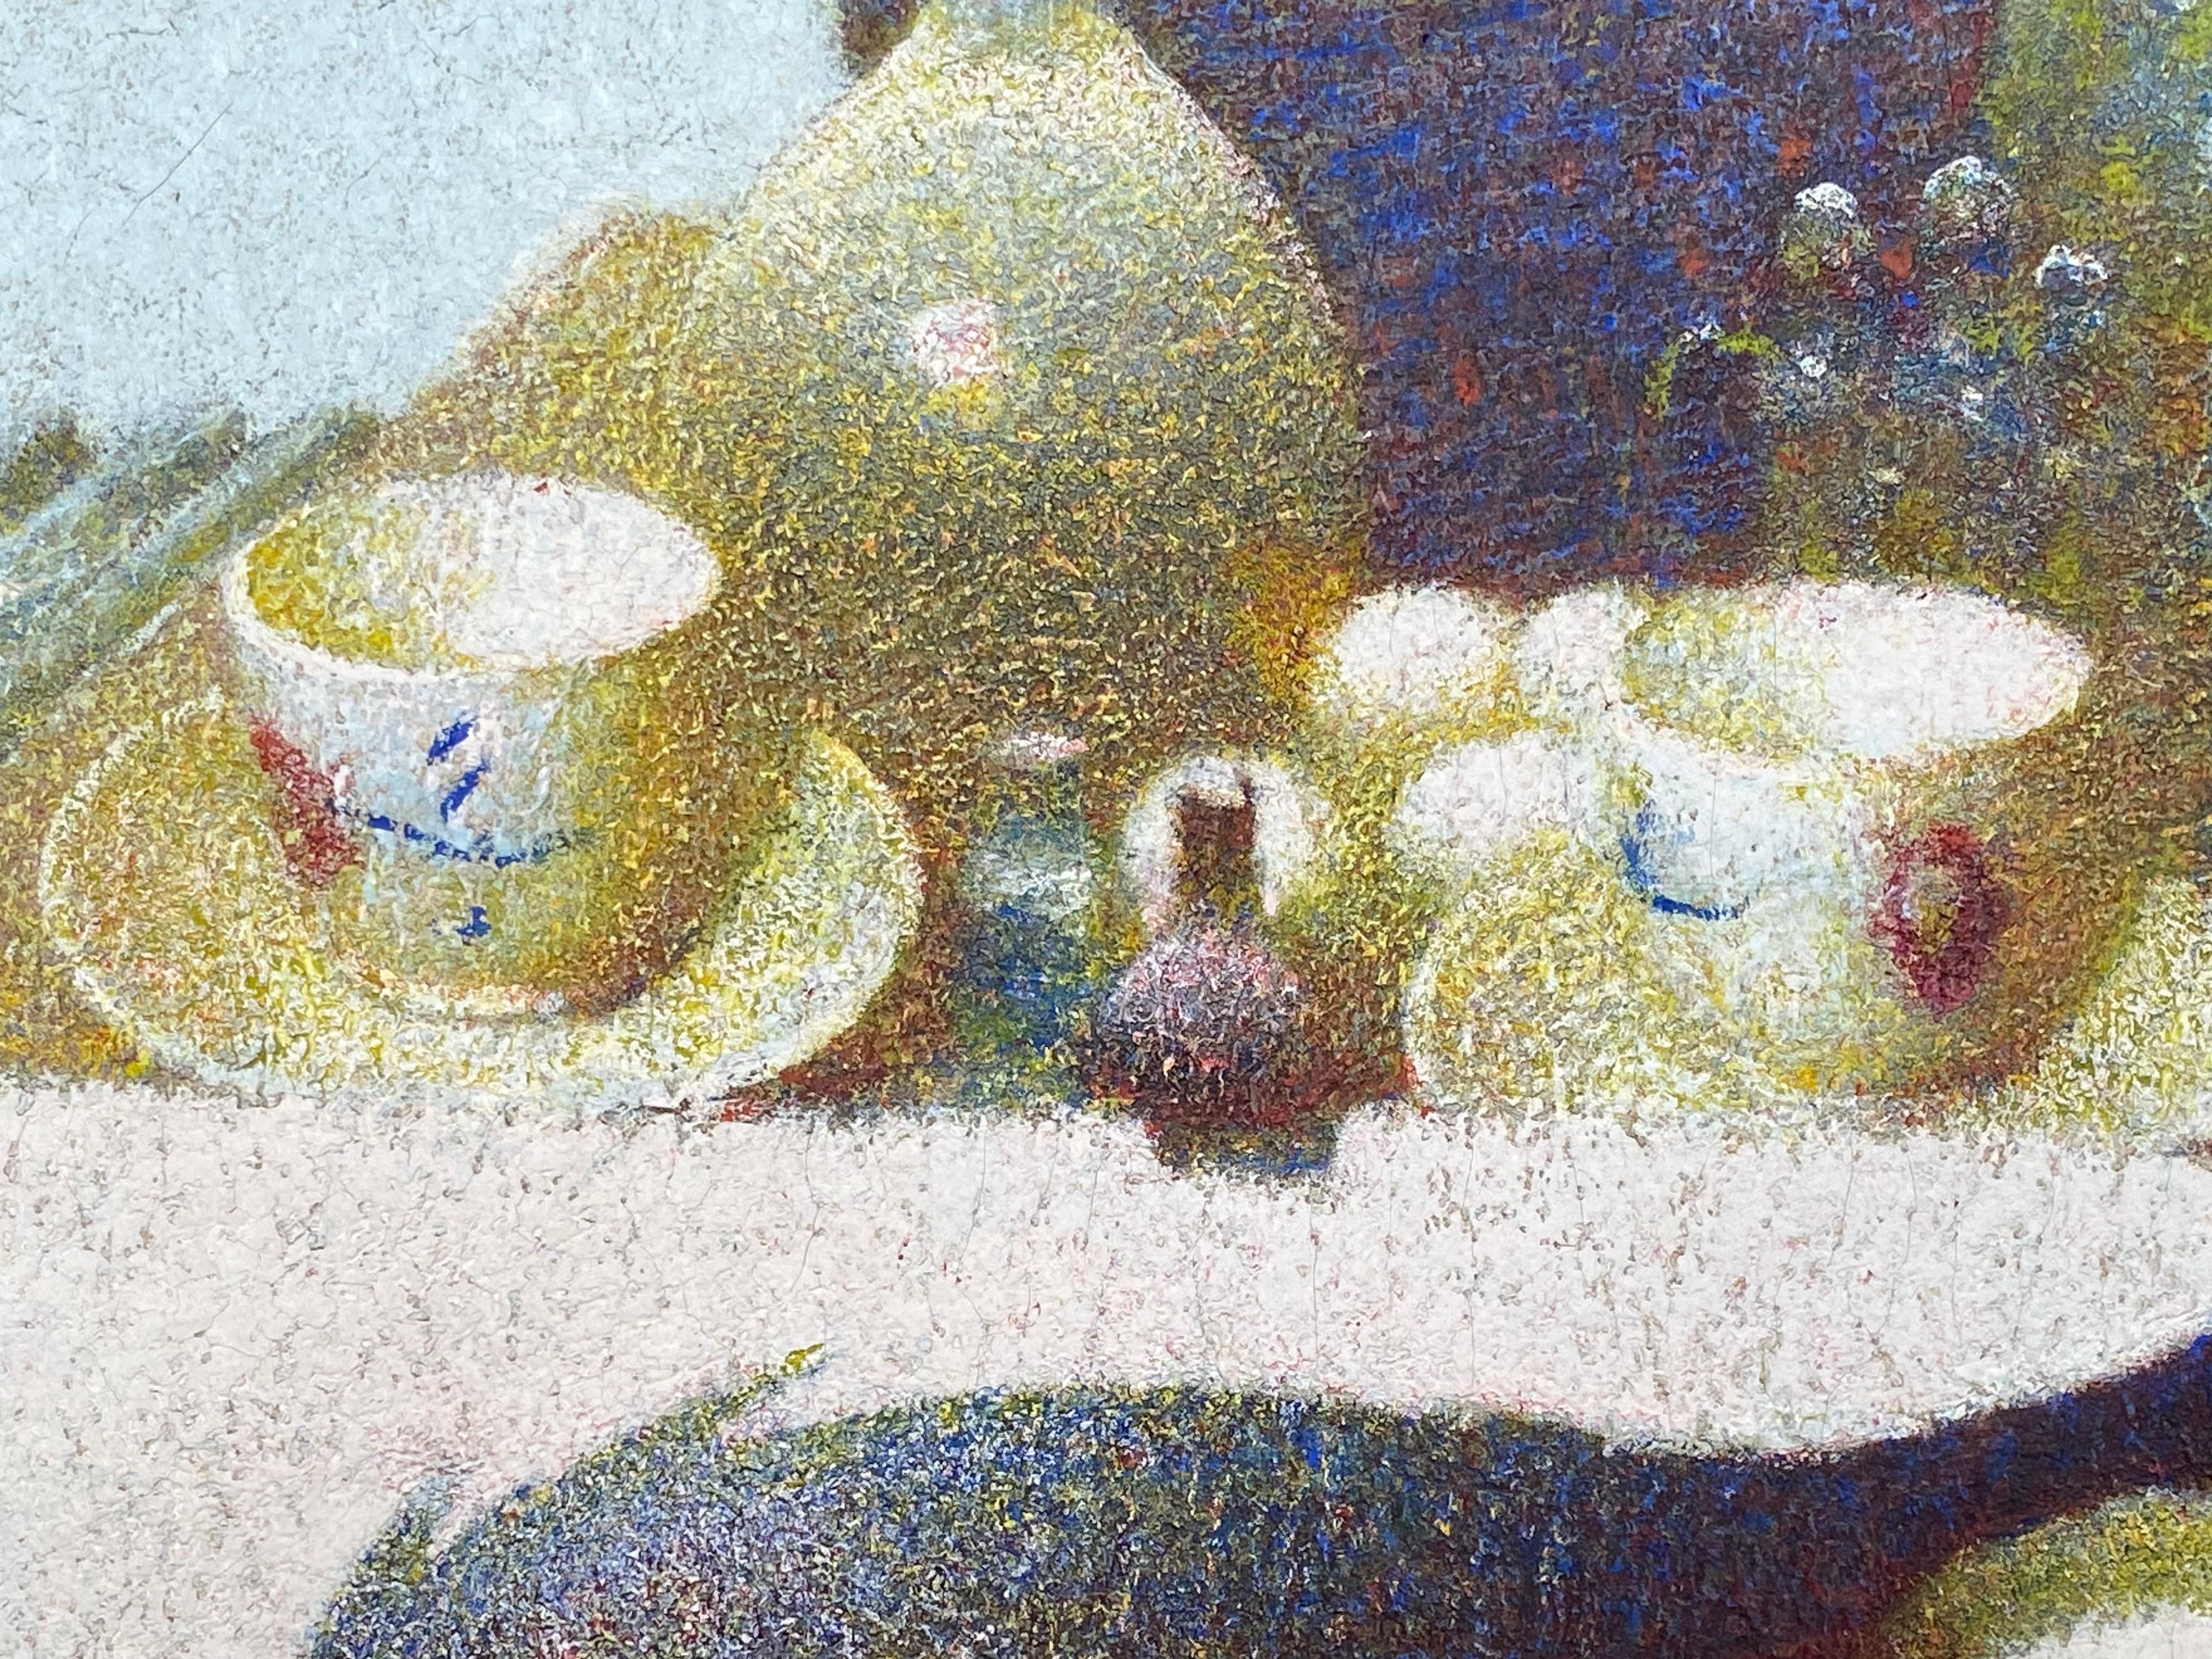 In Enten im Studio zeigt Schmitt den Einfluss der Impressionisten und der Pointillisten, indem er deren leuchtende und reine Farben aufgreift. Er malte jedoch nicht mit kleinen Punkten, sondern mit kleinen, klammerartigen Punkten und Farbschichten,